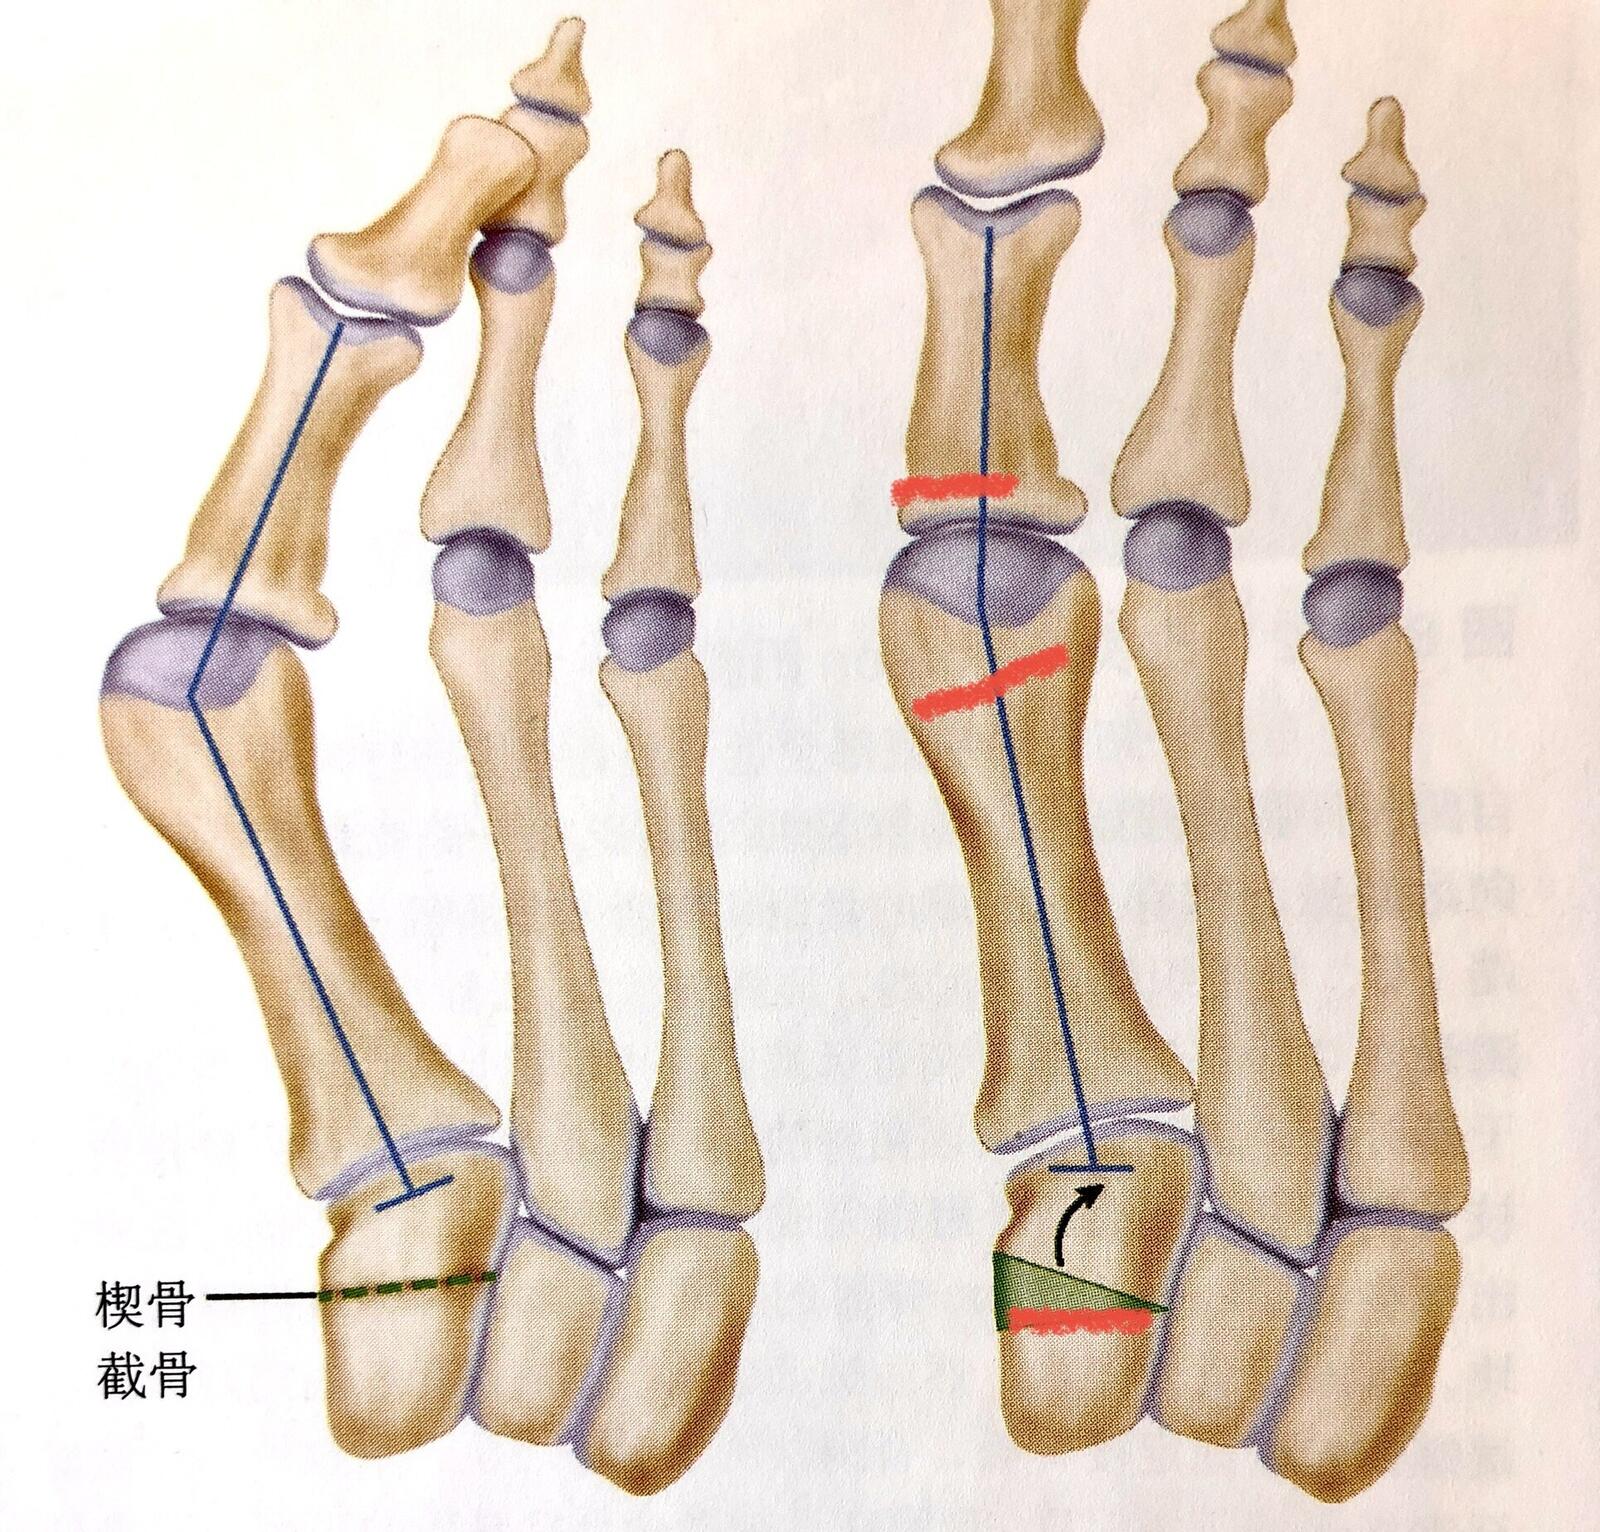 足部第一跖骨位置图图片